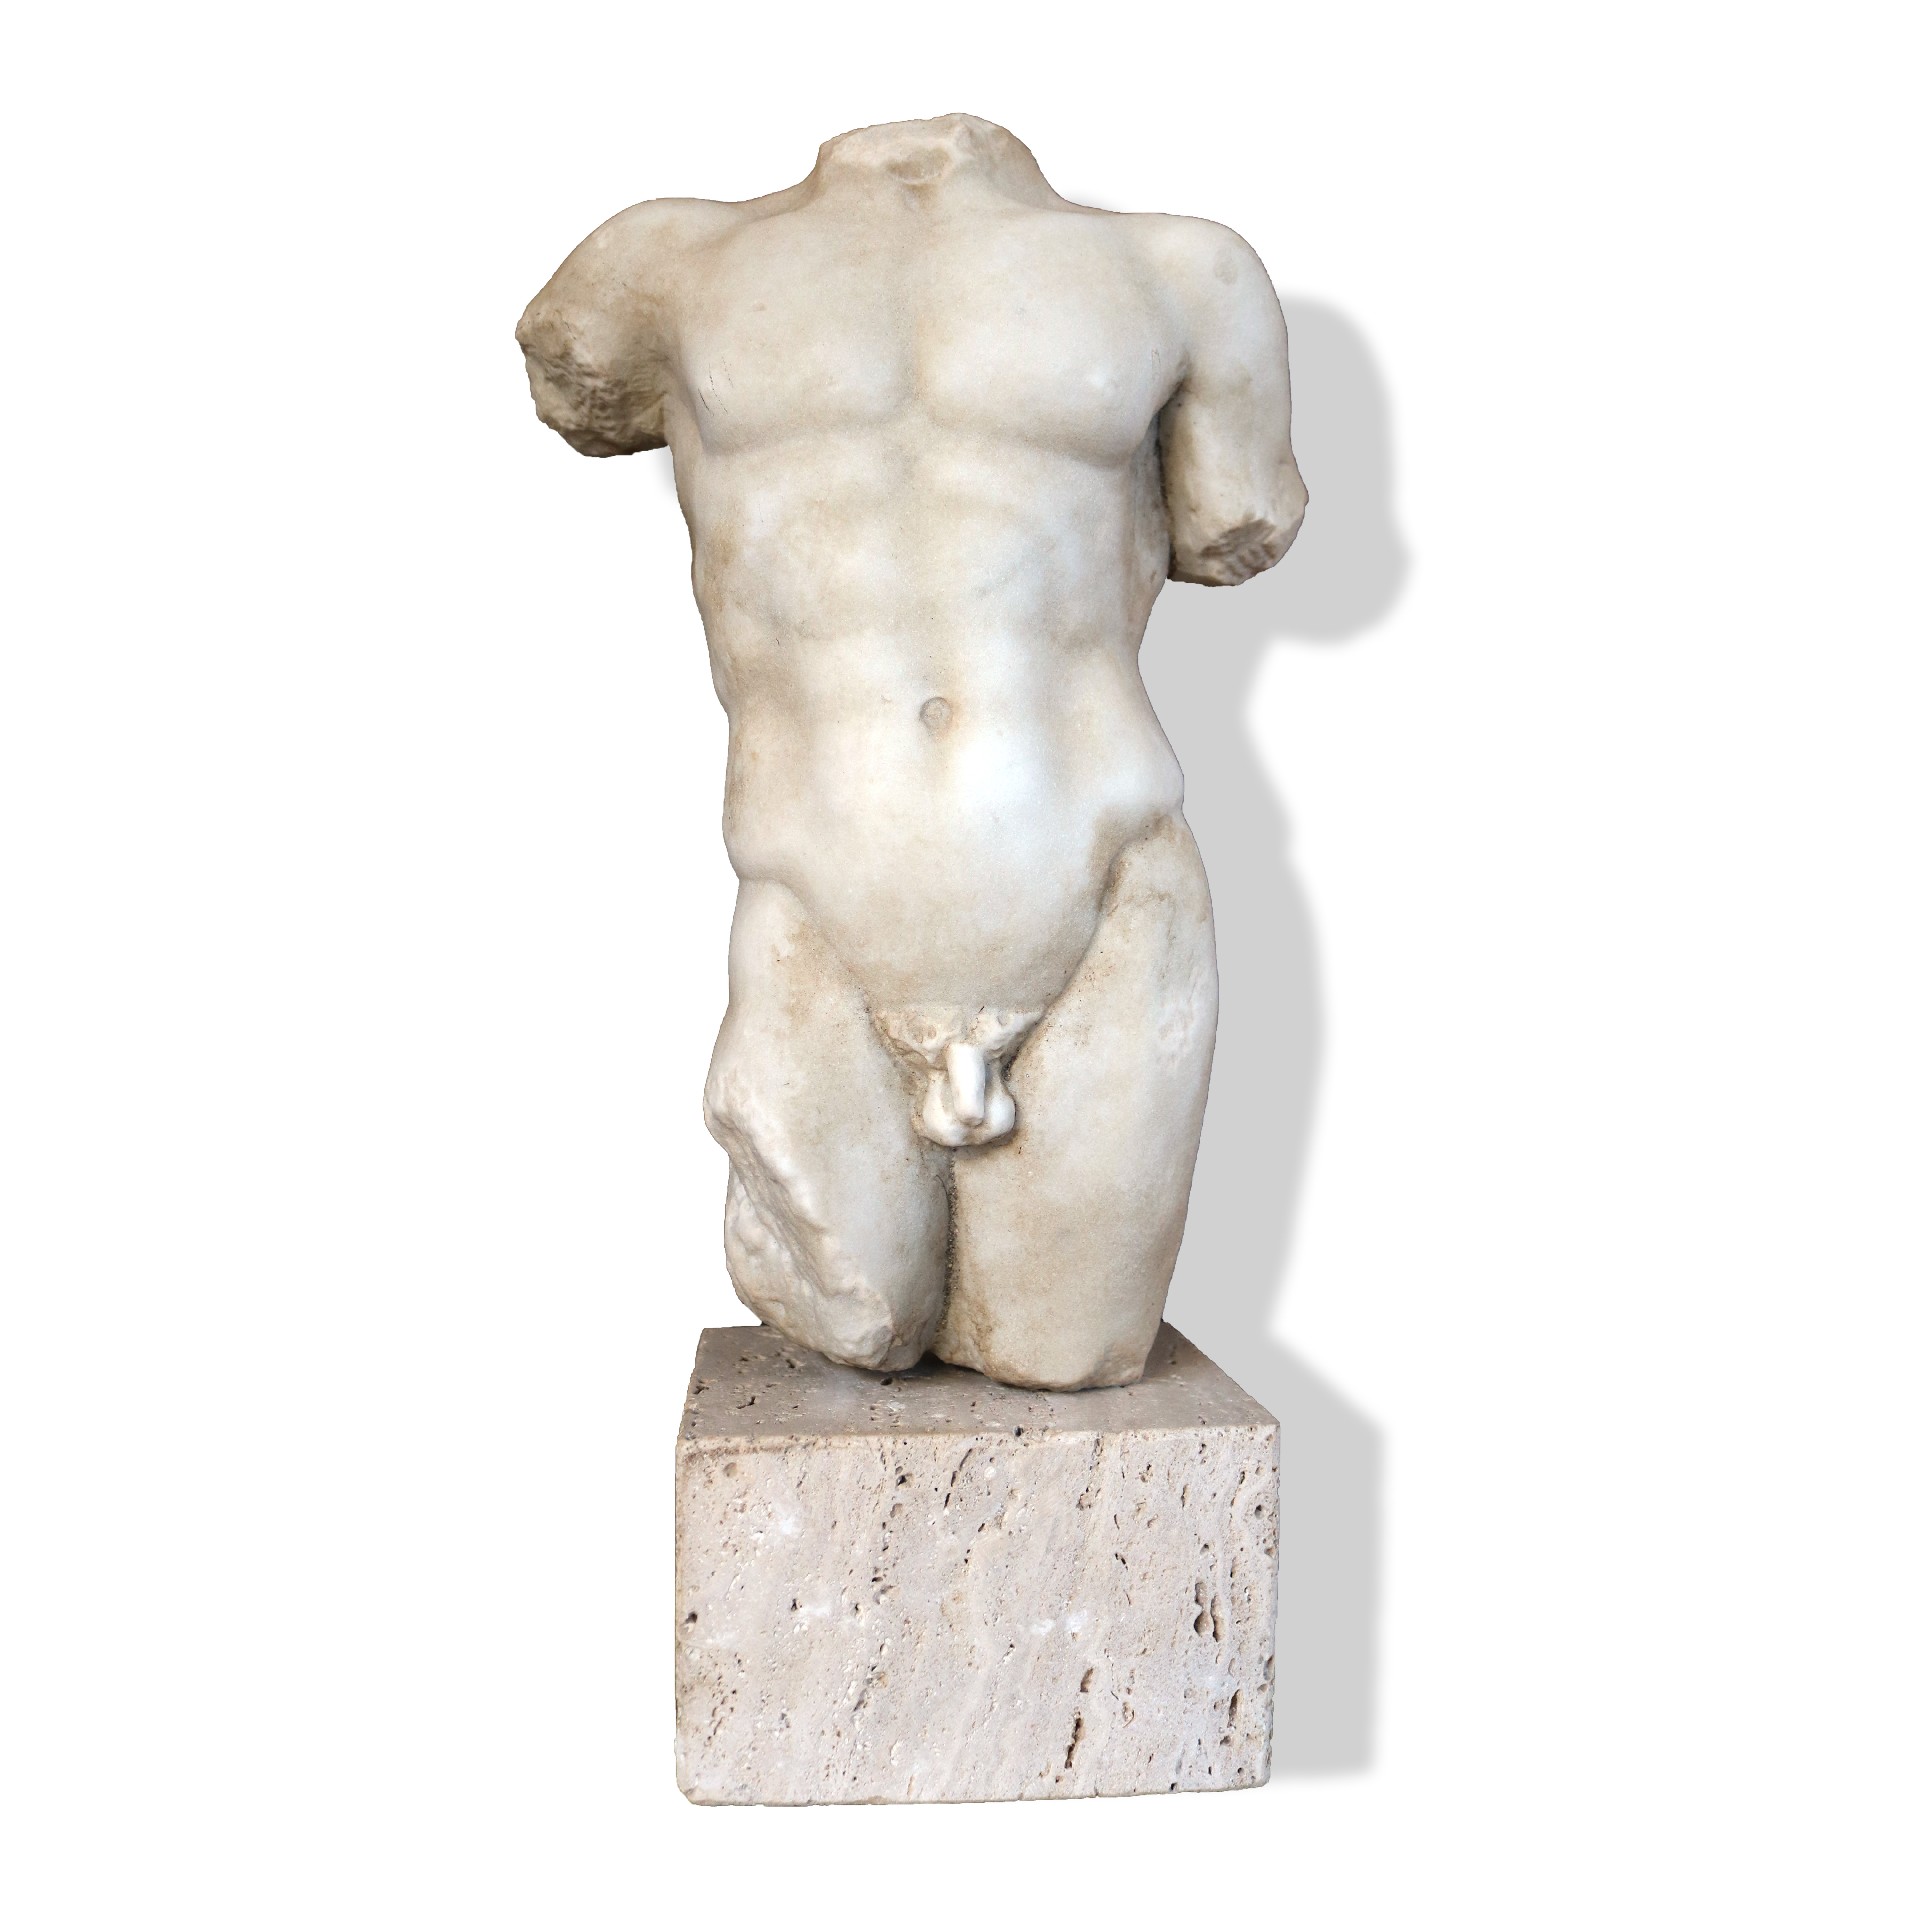 Scultura antica in marmo. Epoca 1800. - Statue Antiche - Sculture Antiche - Prodotti - Antichità Fiorillo